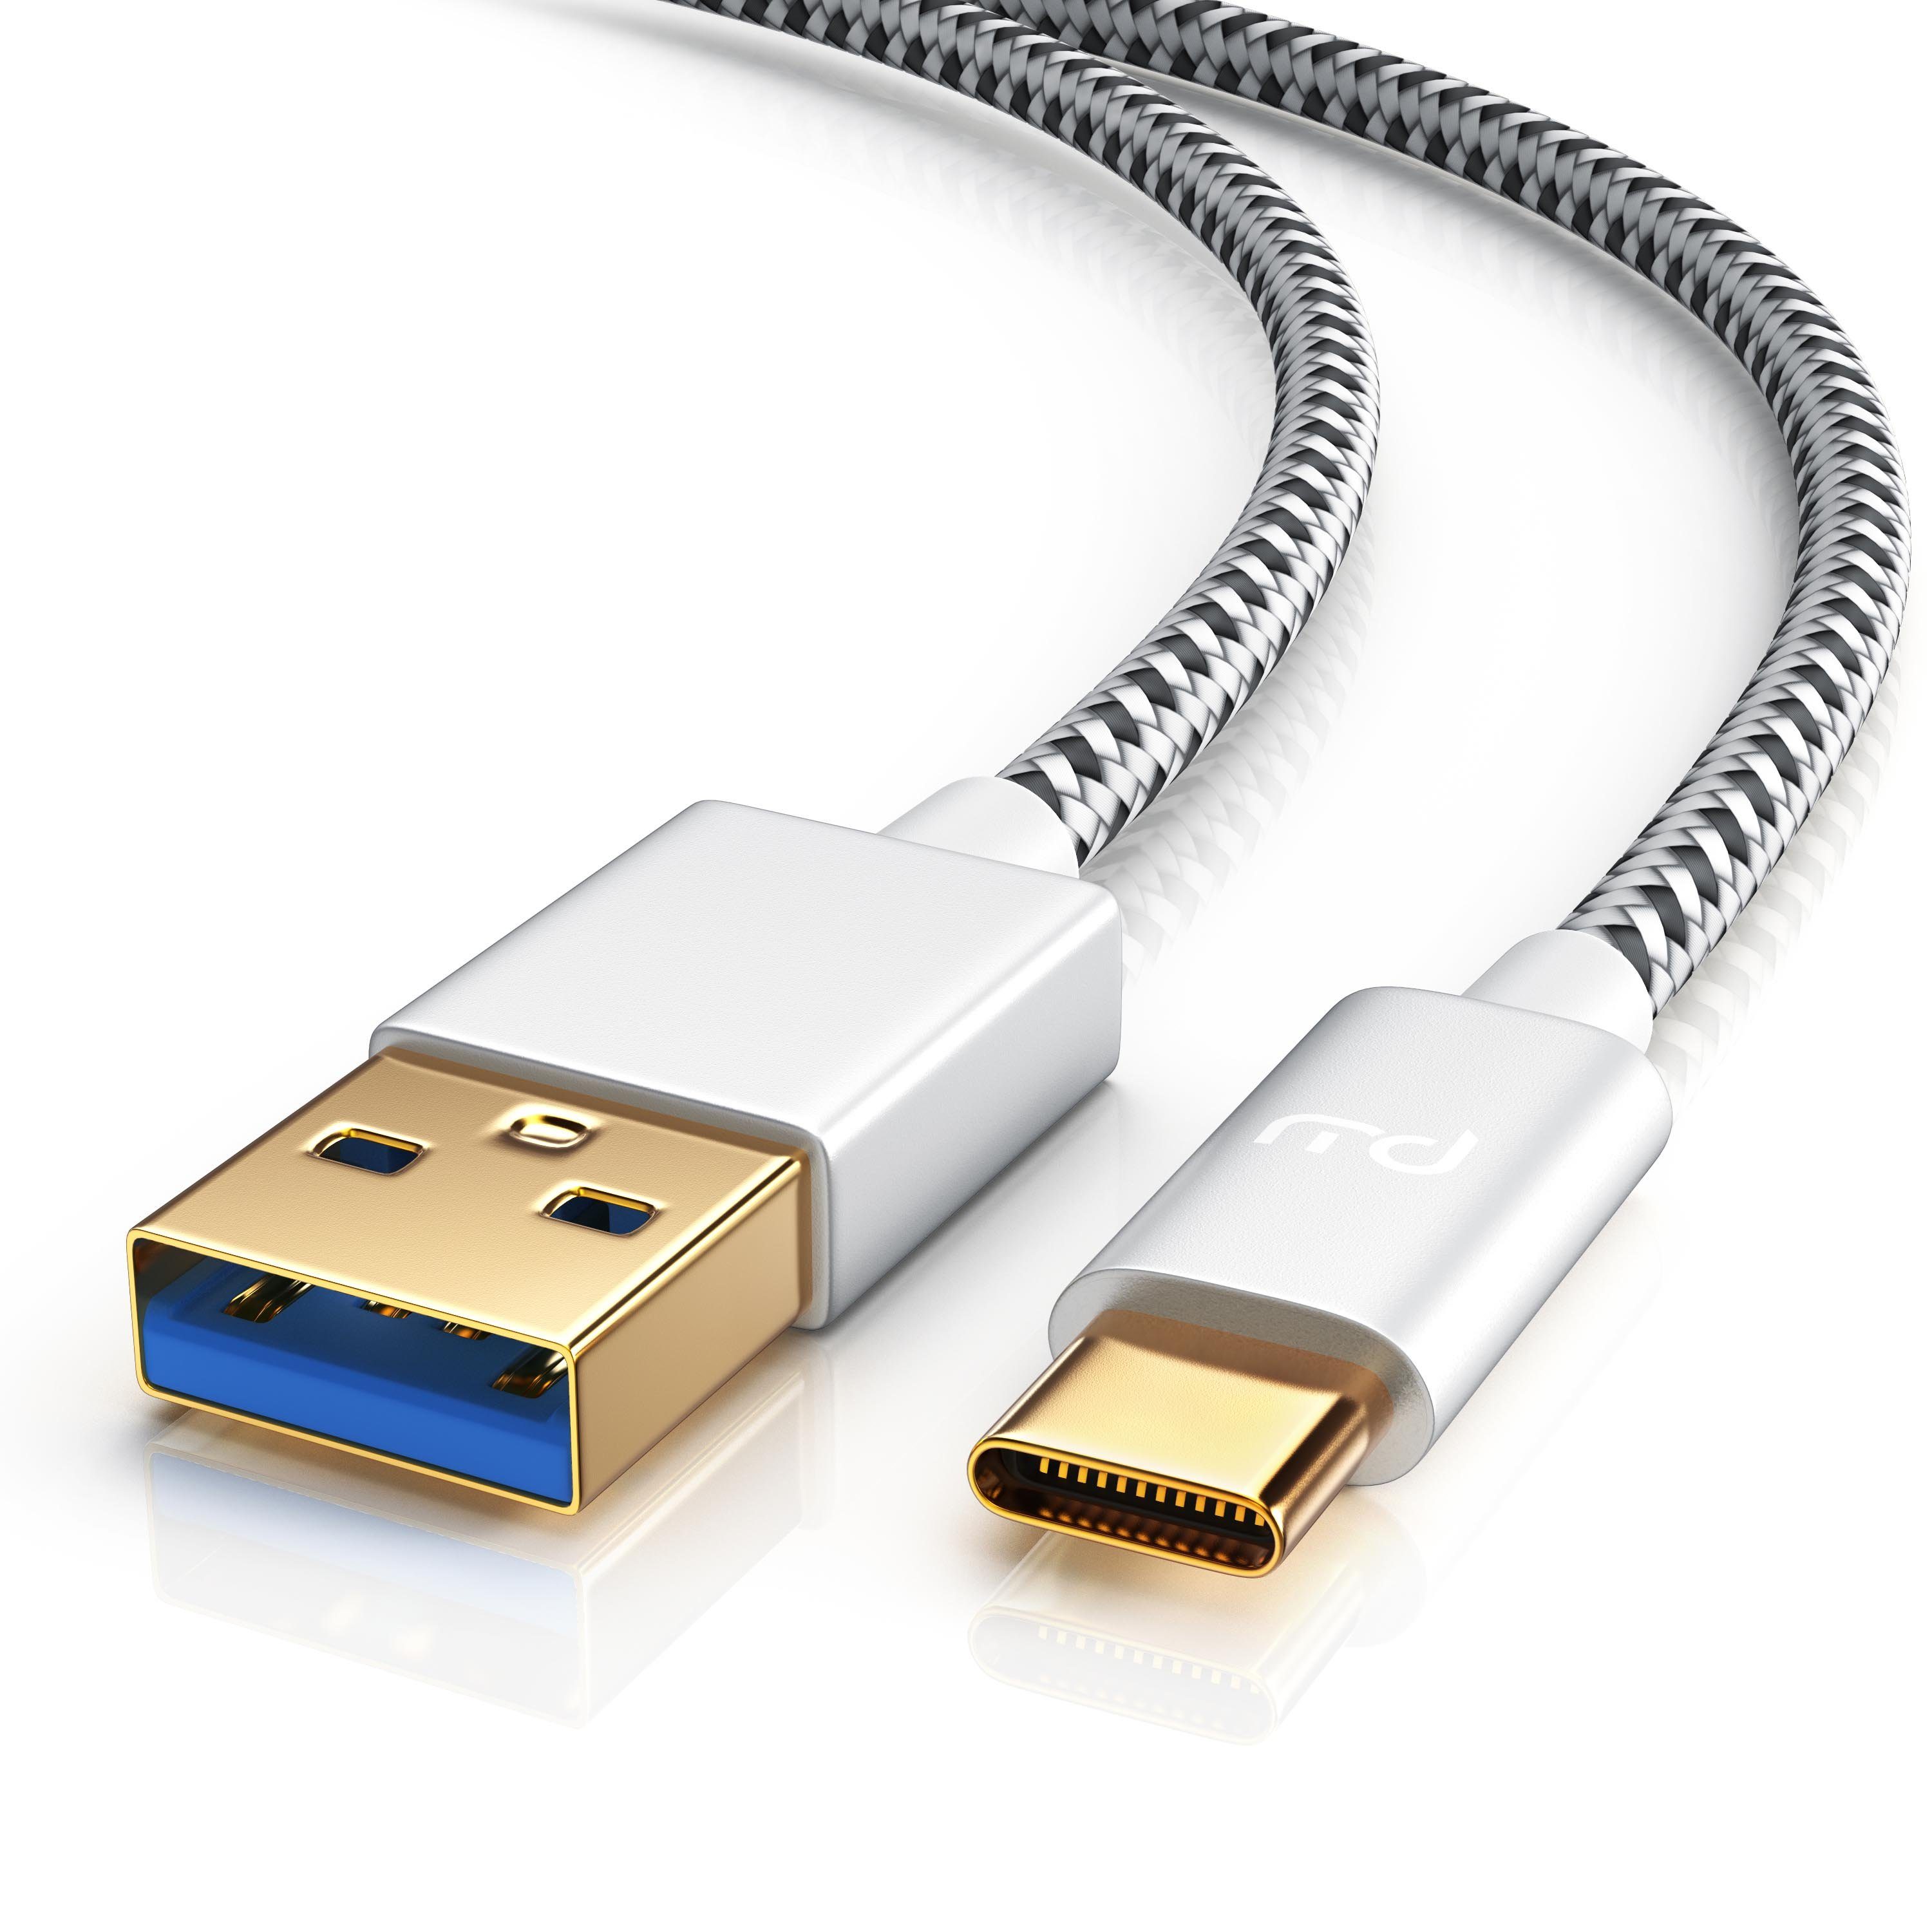 Primewire USB-Kabel, USB Typ C, USB, USB Typ C Stecker, USB 3.0 Typ A  Stecker (50 cm), Premium USB 3.1 Ladekabel - Datenkabel - Nylonmantel -  3-Fach geschirmt - bidirektional online kaufen | OTTO